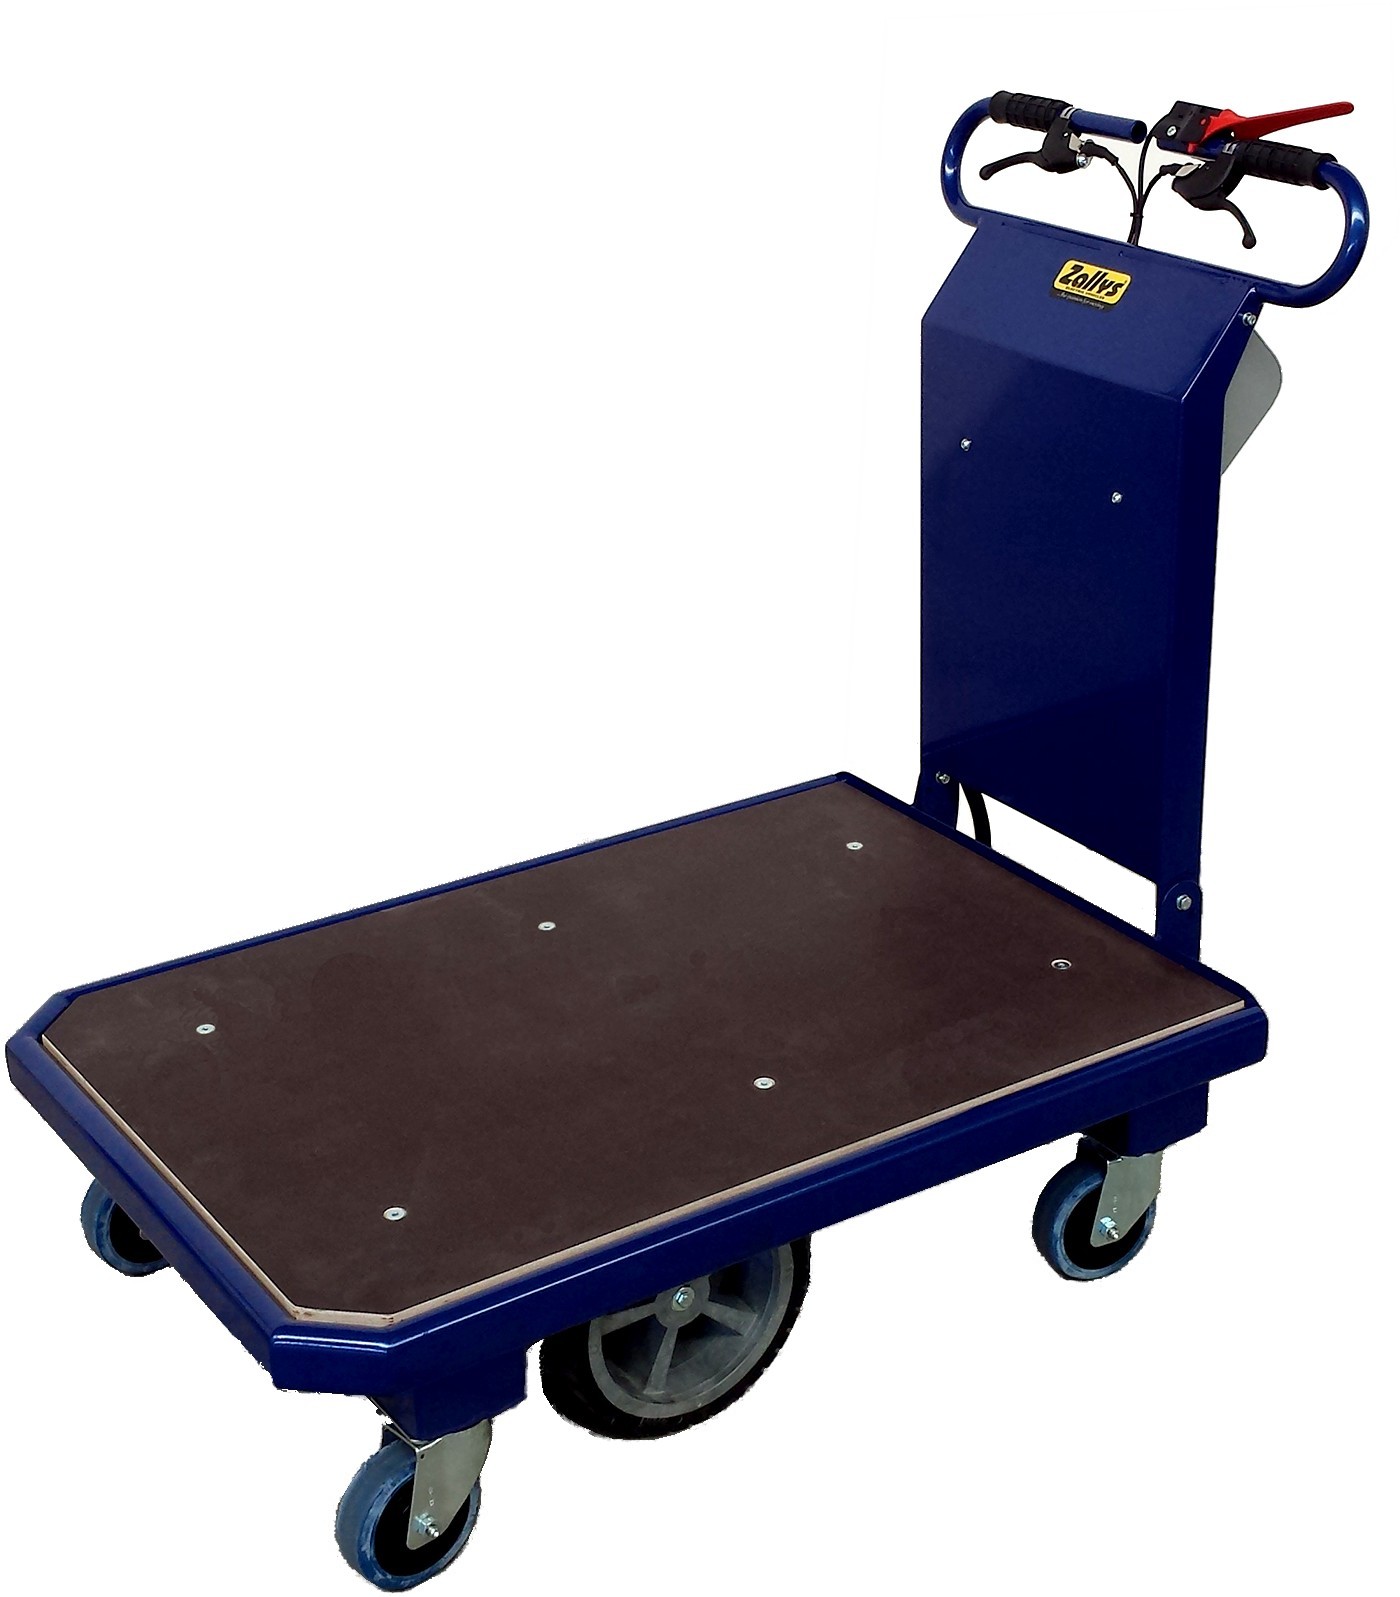 Chariot motorisé 300 kg : Devis sur Techni-Contact - Chariot